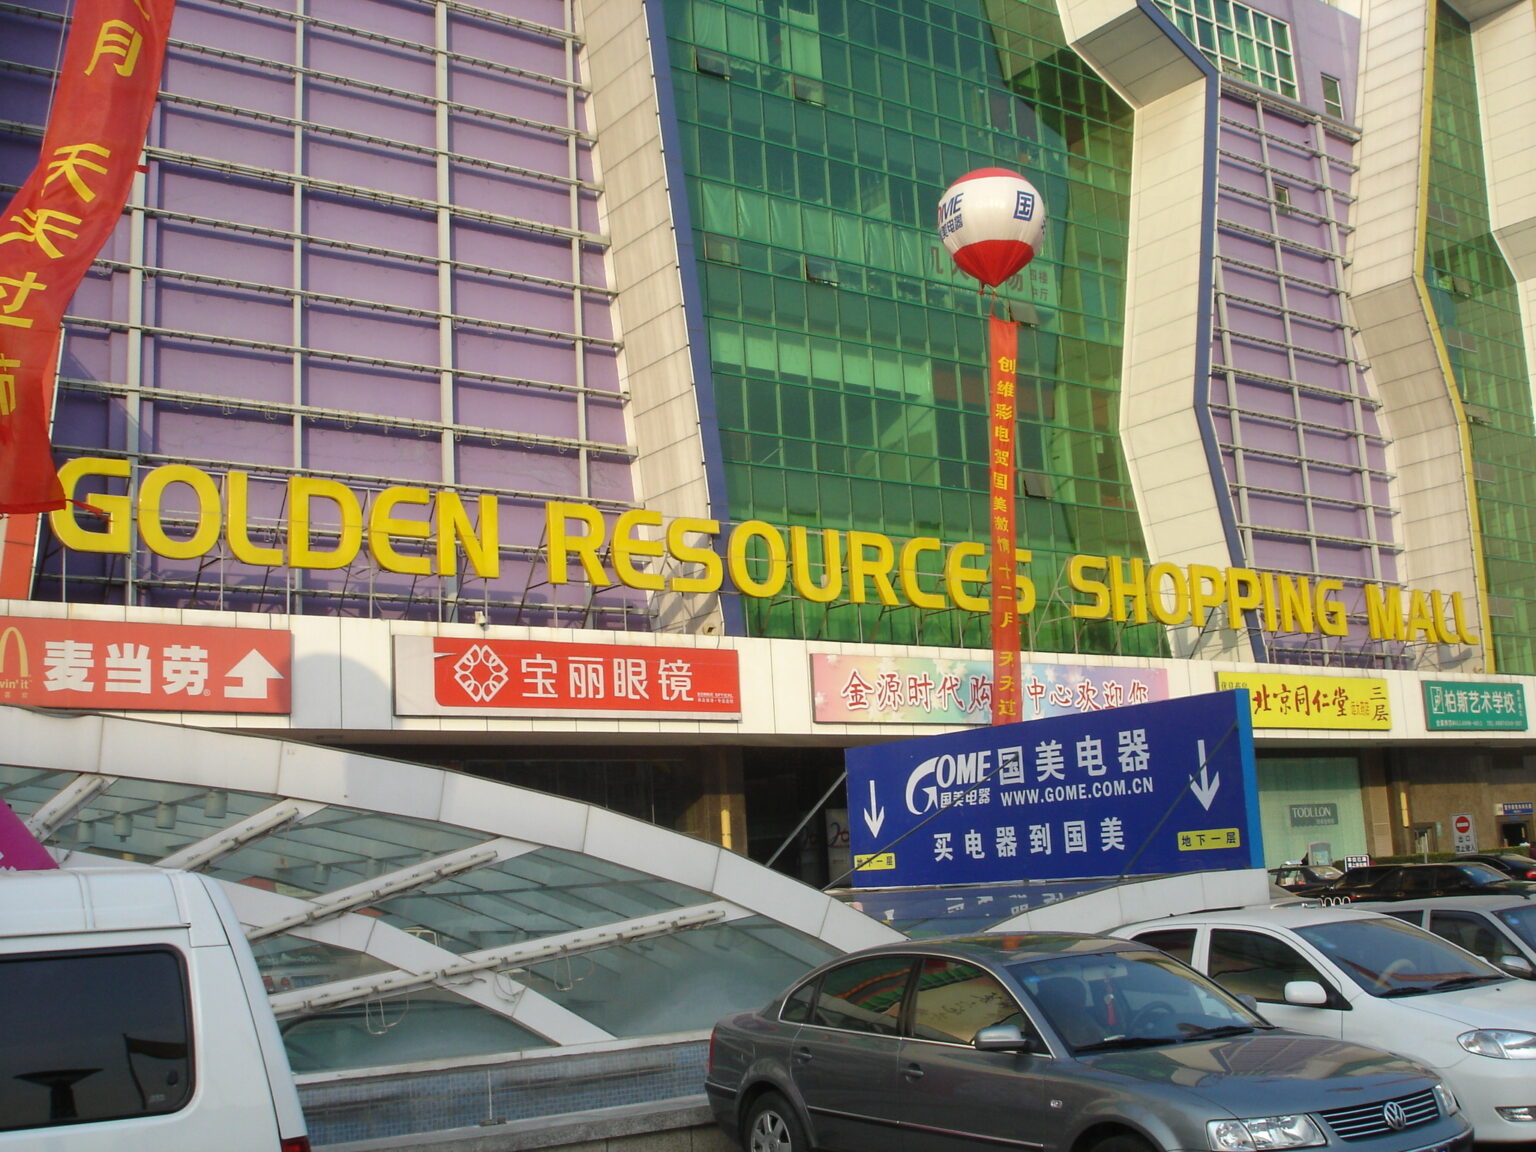 مول الموارد الذهبية للتسوق